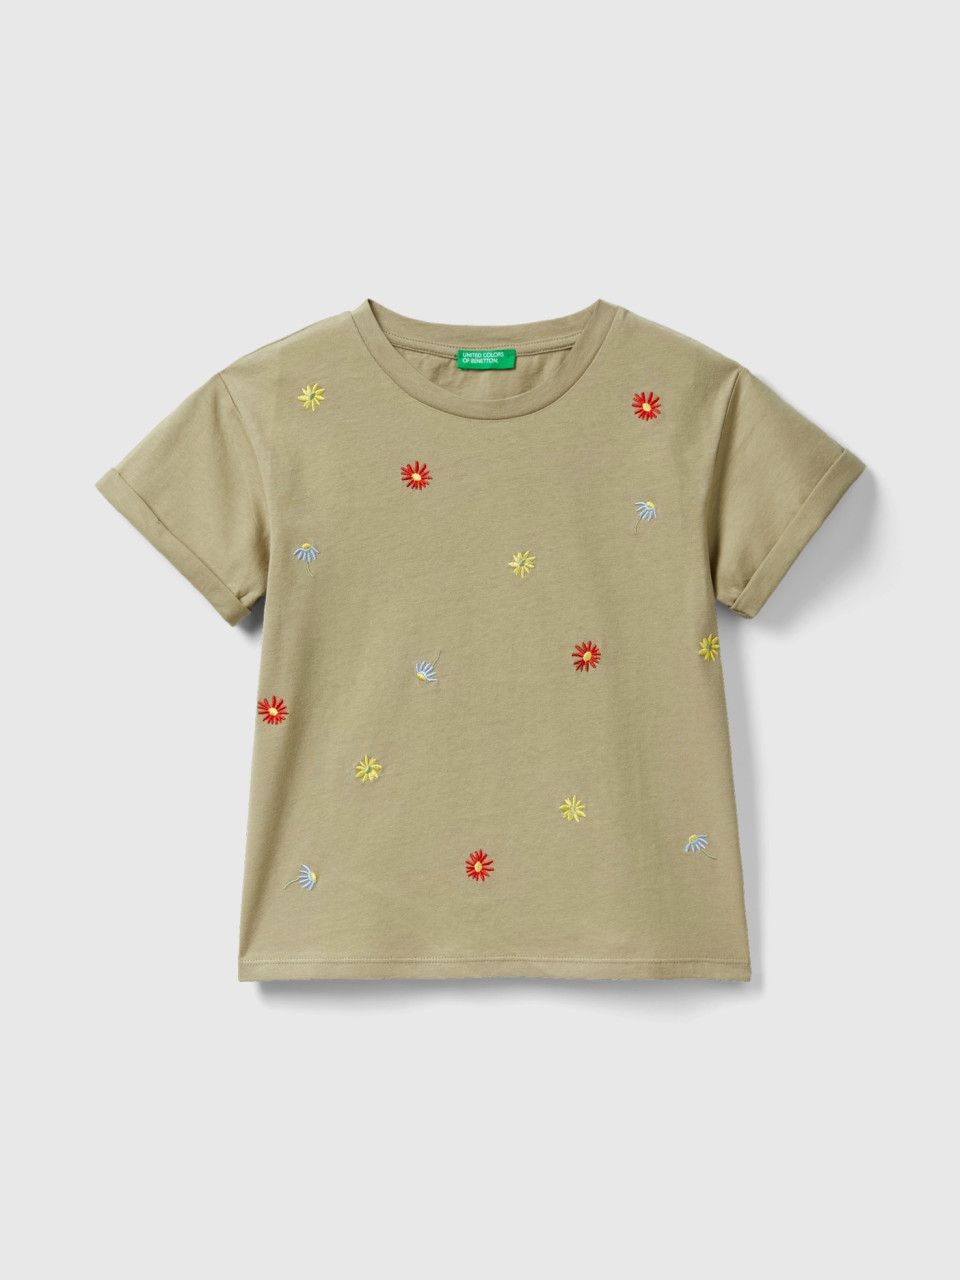 Benetton, Camiseta Con Flores Bordadas, Verde Claro, Niños